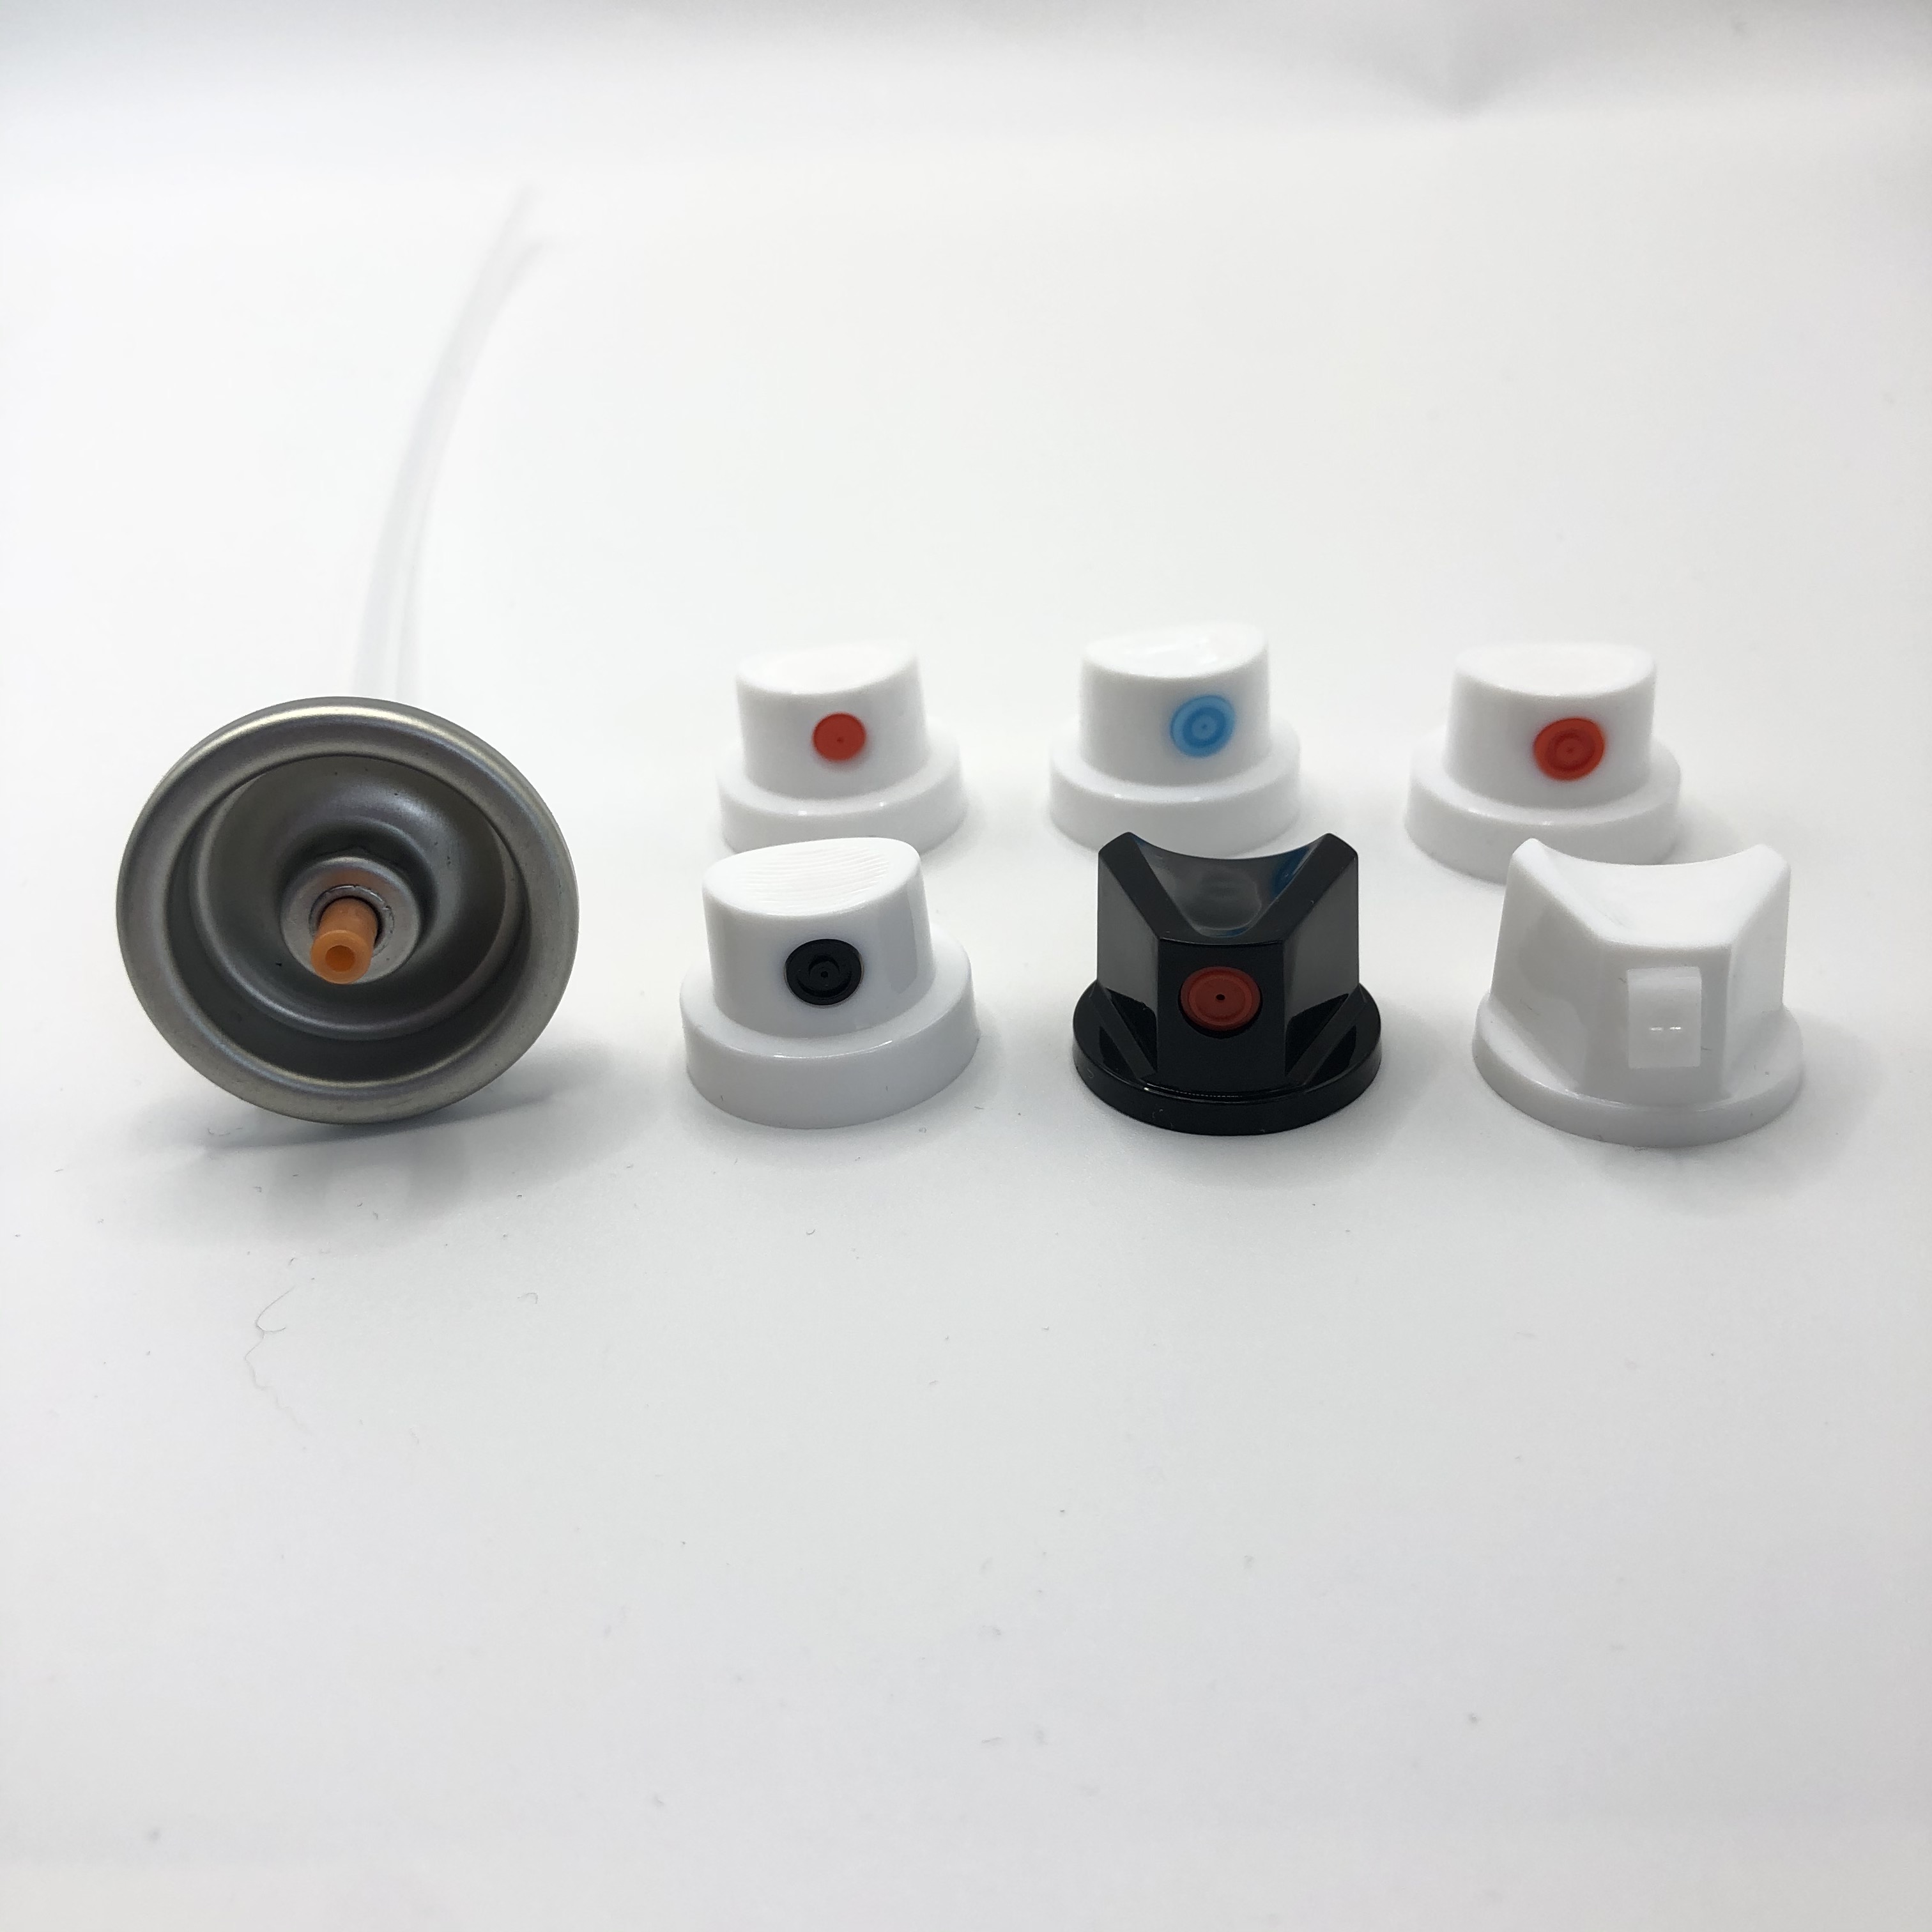 Надежный клапан распылительной краски - Точный контроль для профессиональной отделки - долговечный и универсальный